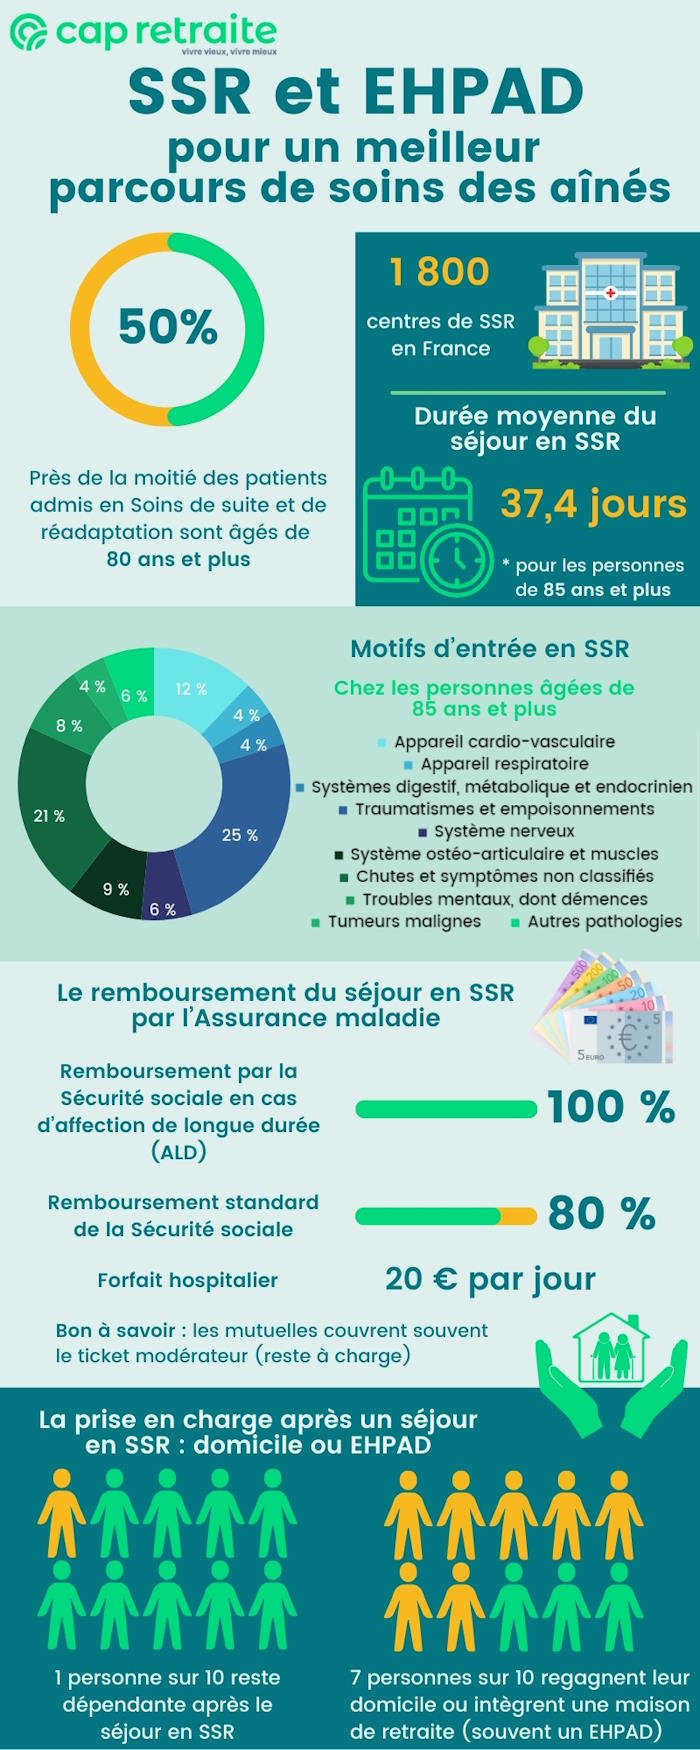 Infographie sur les SSR en France et l'accueil en Ehpad après un séjour en soins de suite